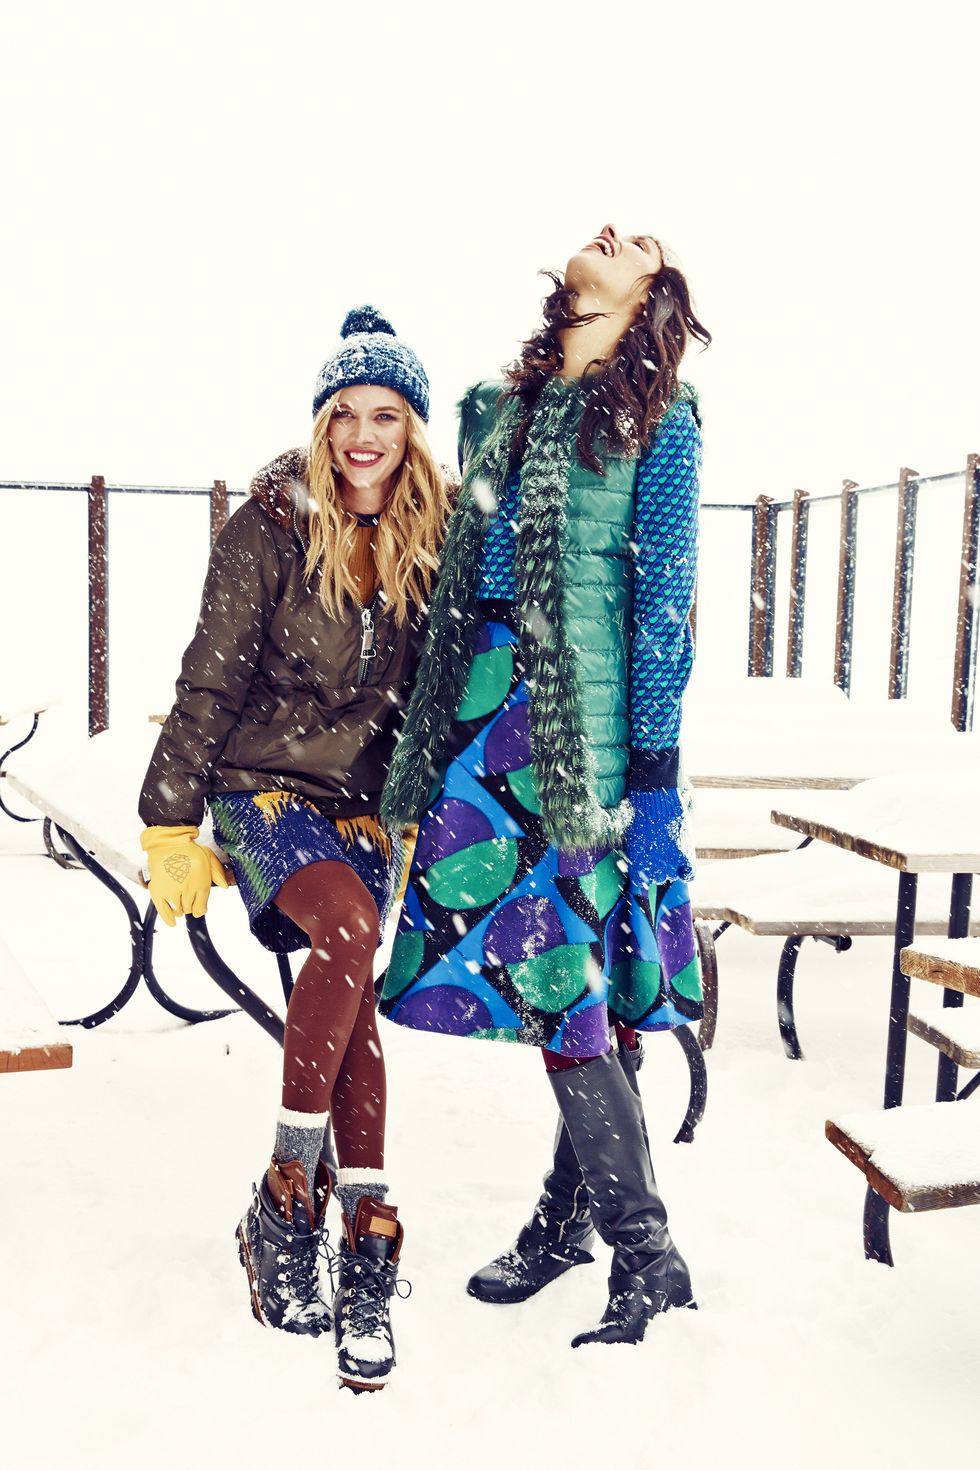 en la foto, dos jóvenes se divierten y aprenden a ser felices pese a la adversidad de un día de nieve